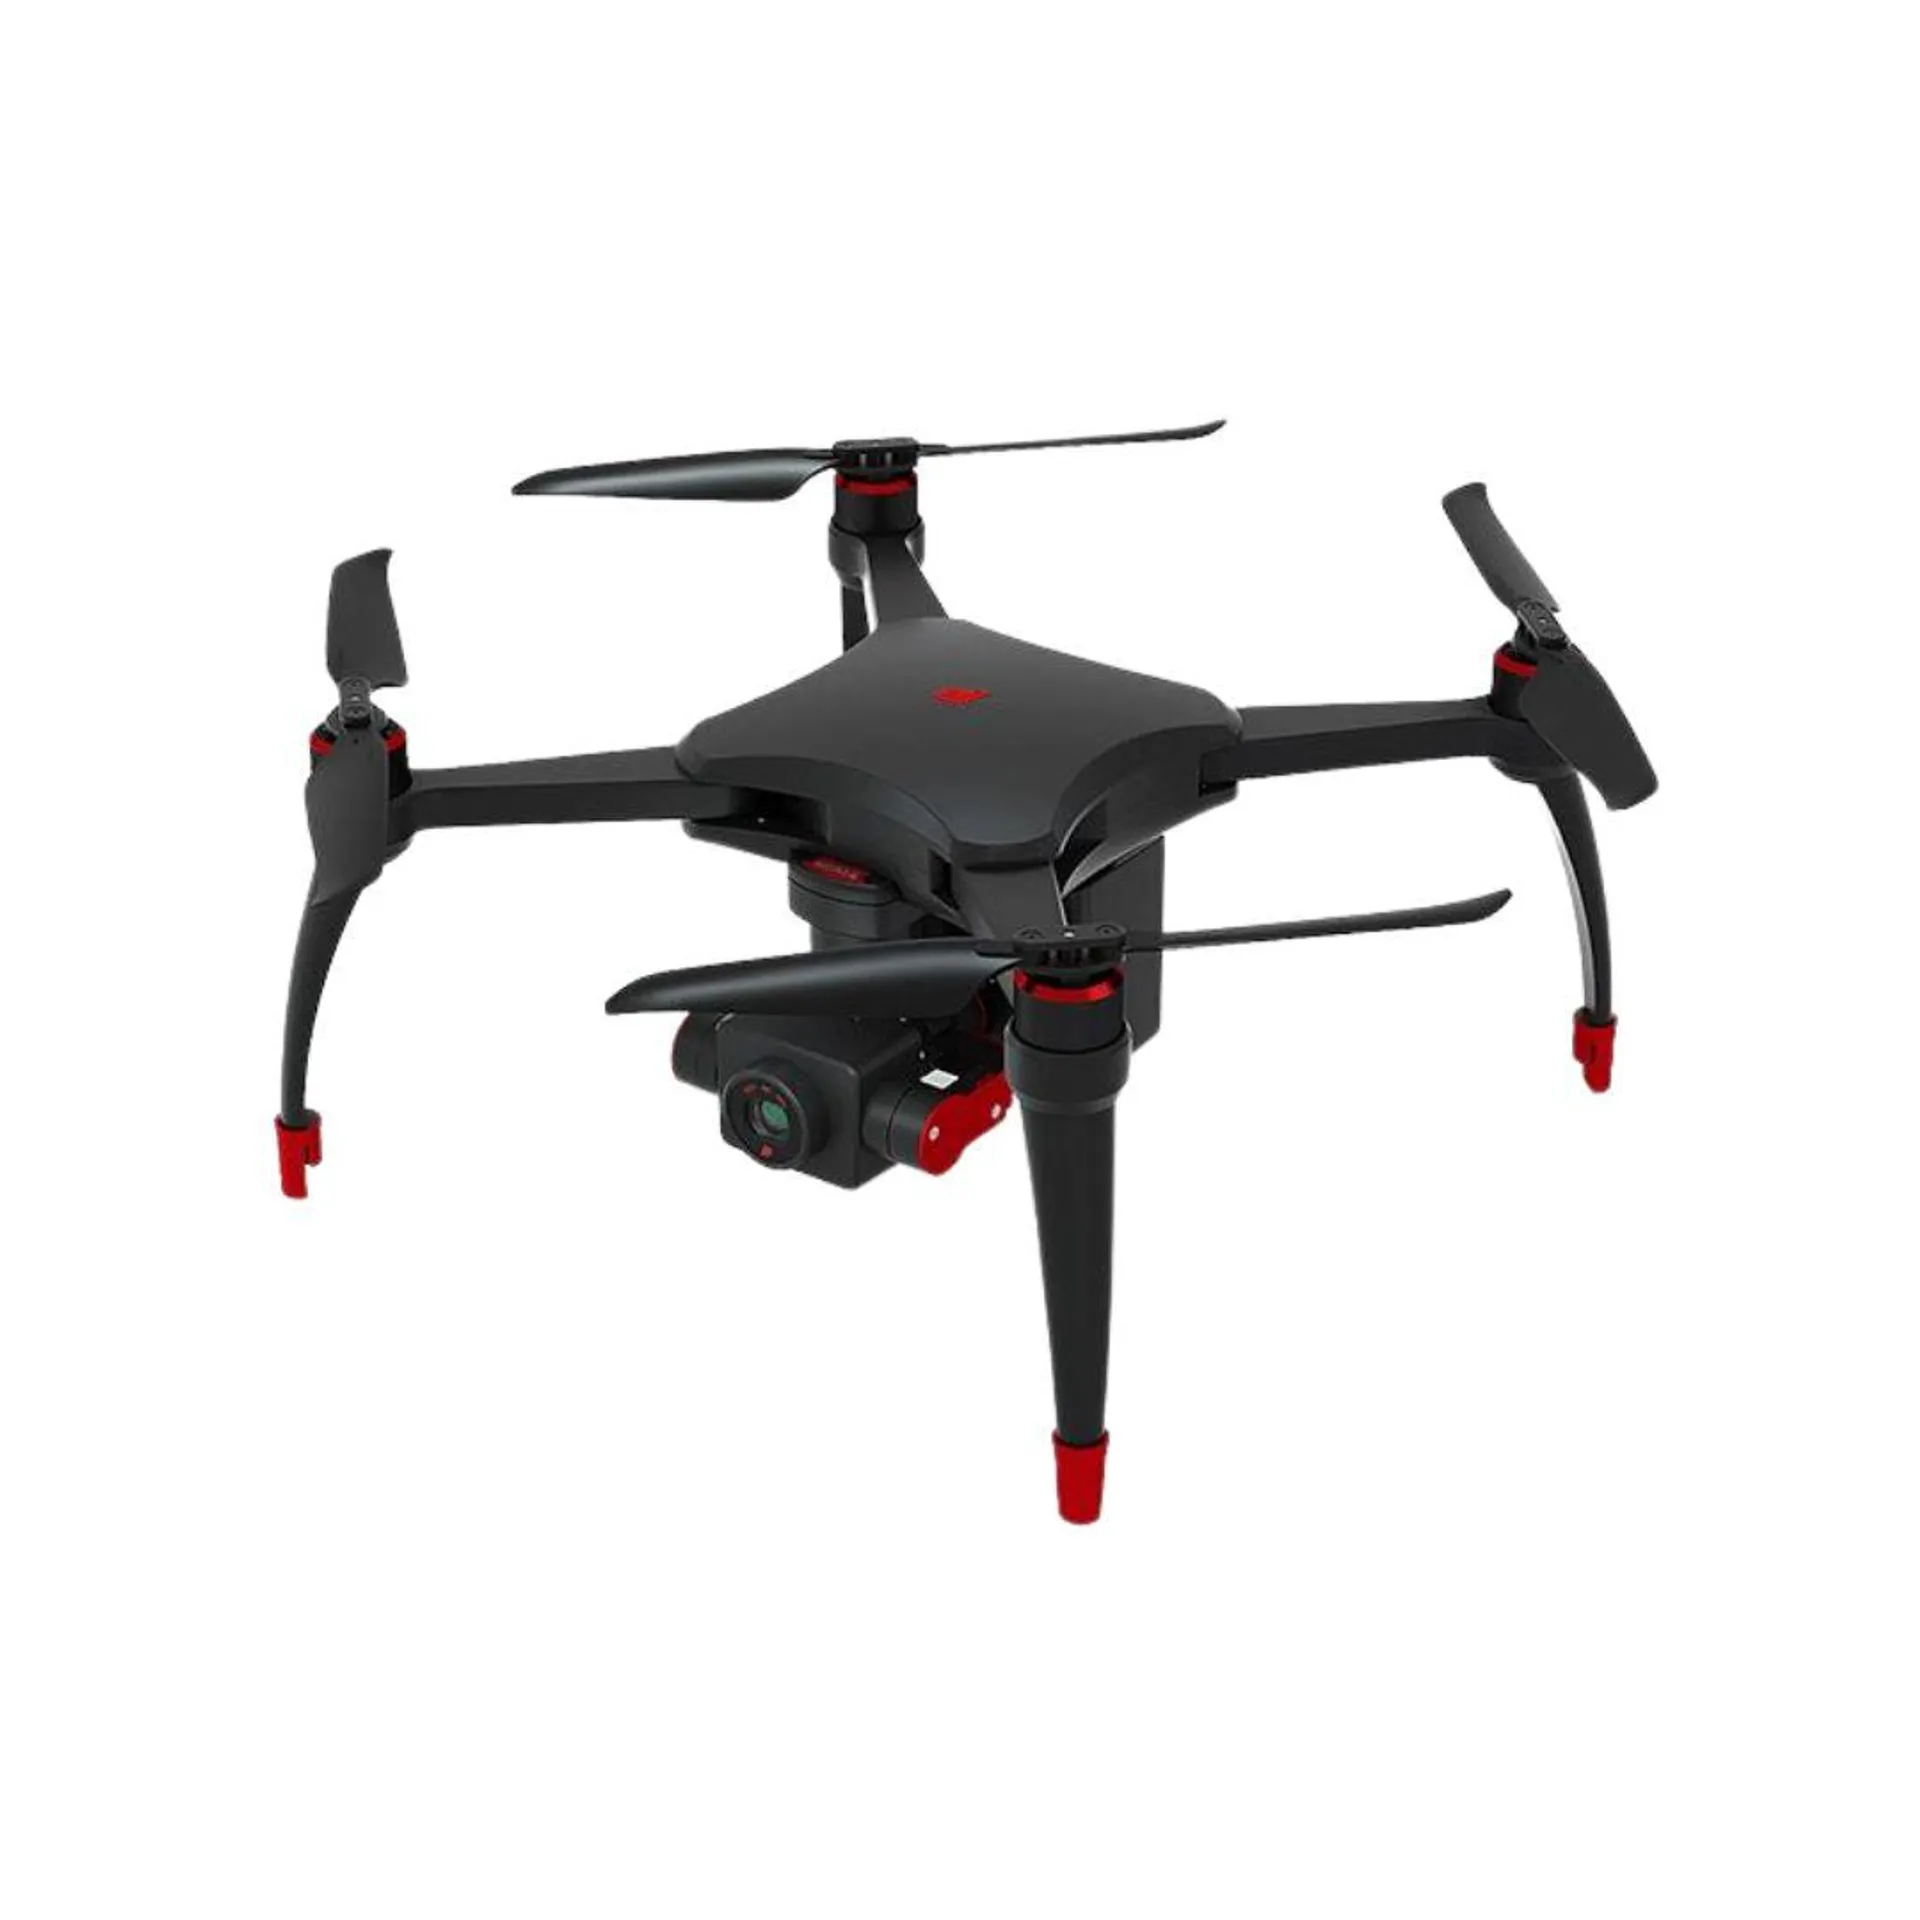 Flypie 4K PRO Drone : True 4K Video